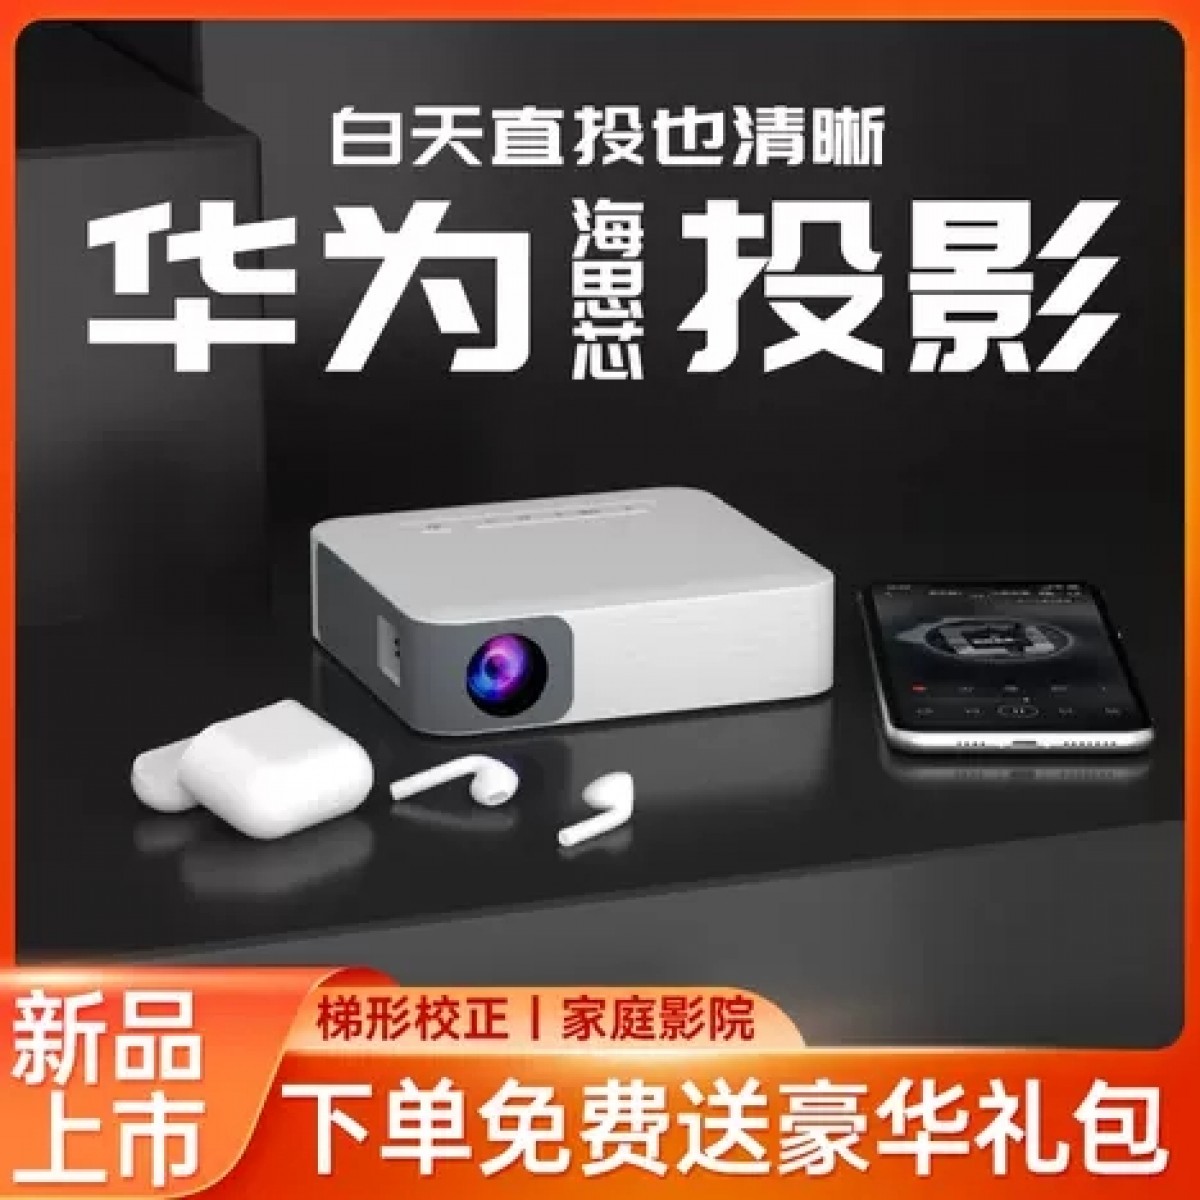 【双12爆款】投影仪4K超高清家用家庭影院小型便携护眼投墙手机智能一体机卧室宿舍1080P投影机